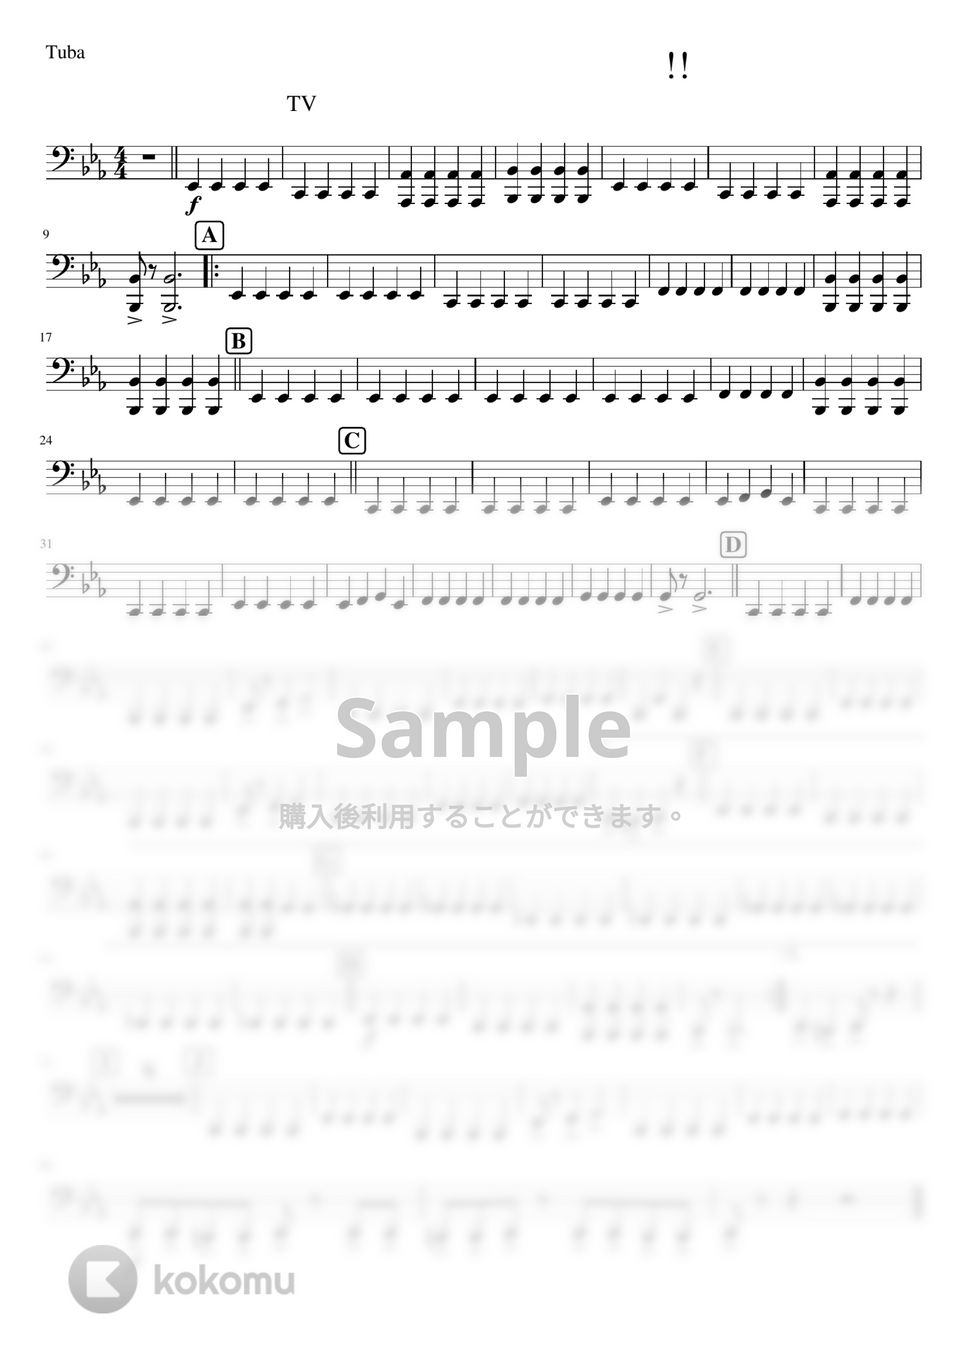 おジャ魔女どれみ - おジャ魔女カーニバル!! (吹奏楽少人数チューバ) by orinpia music